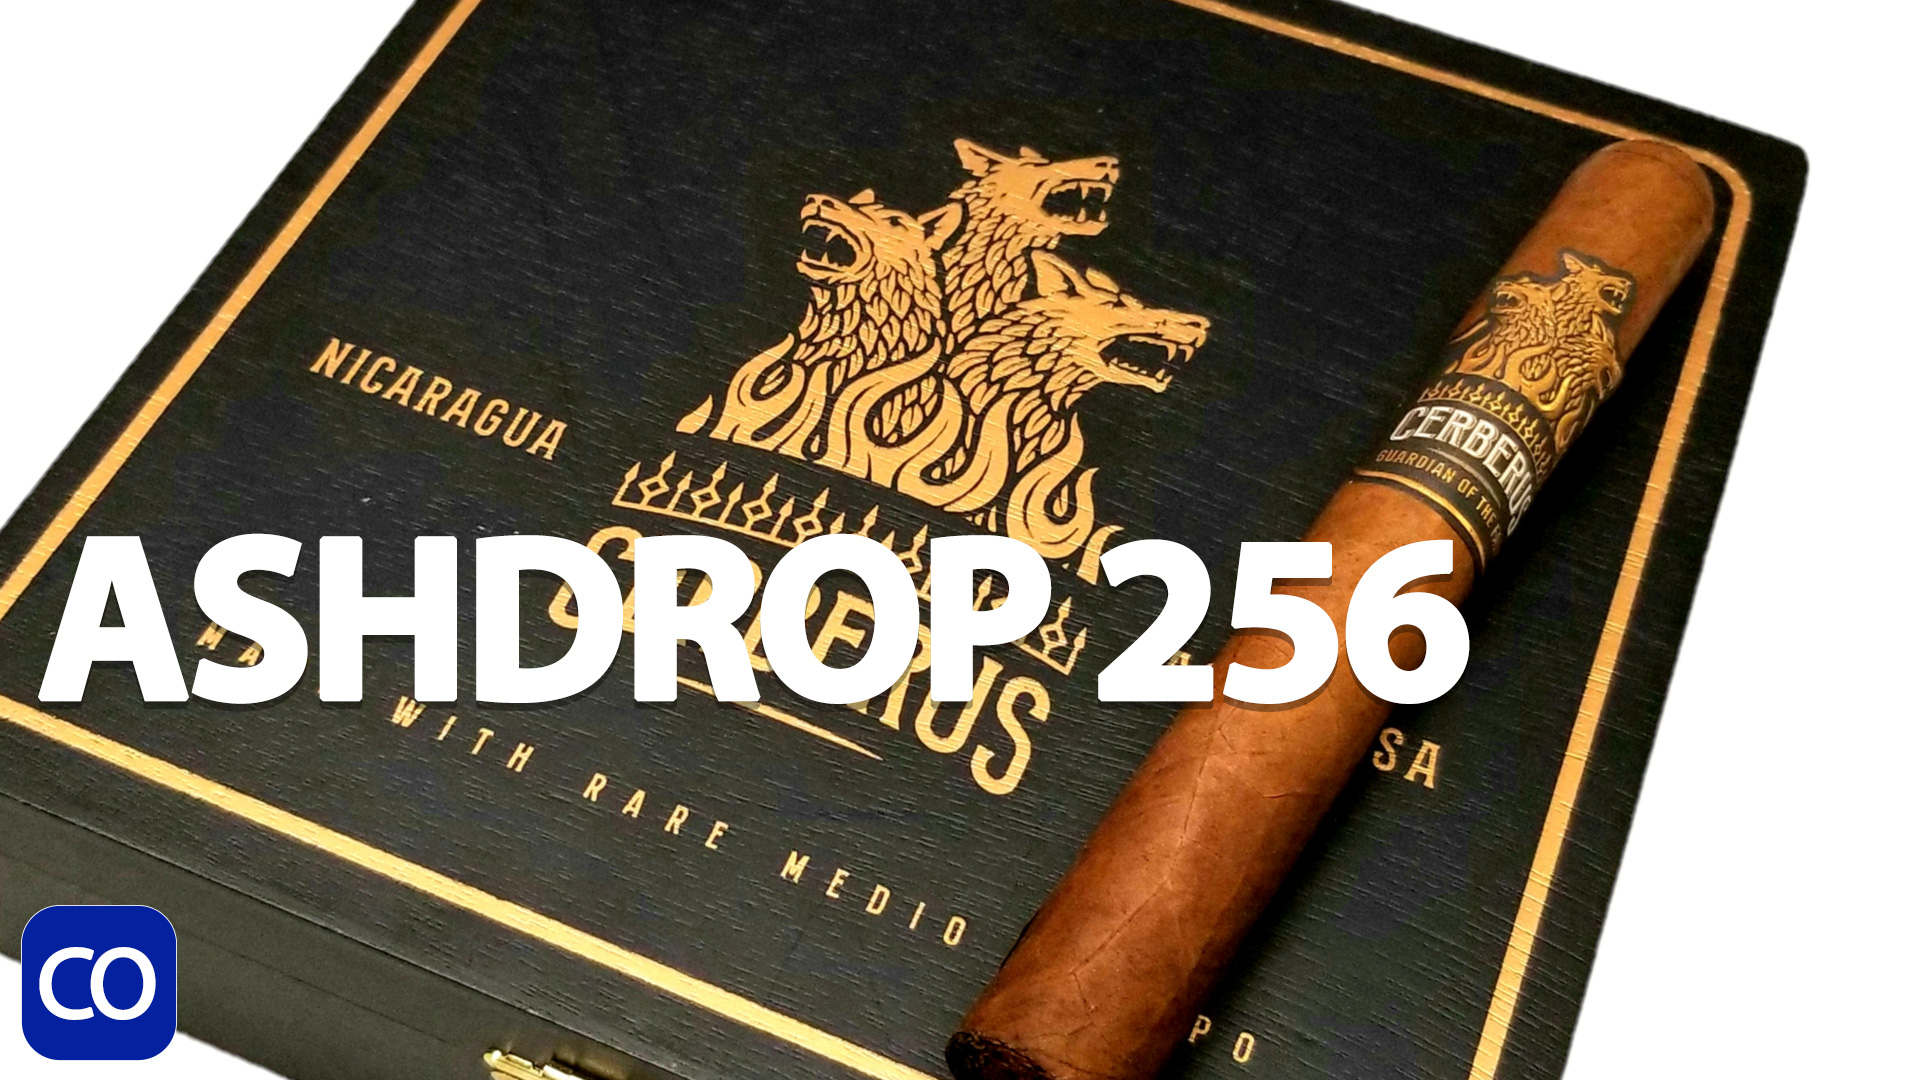 CigarAndPipes CO Ashdrop 256